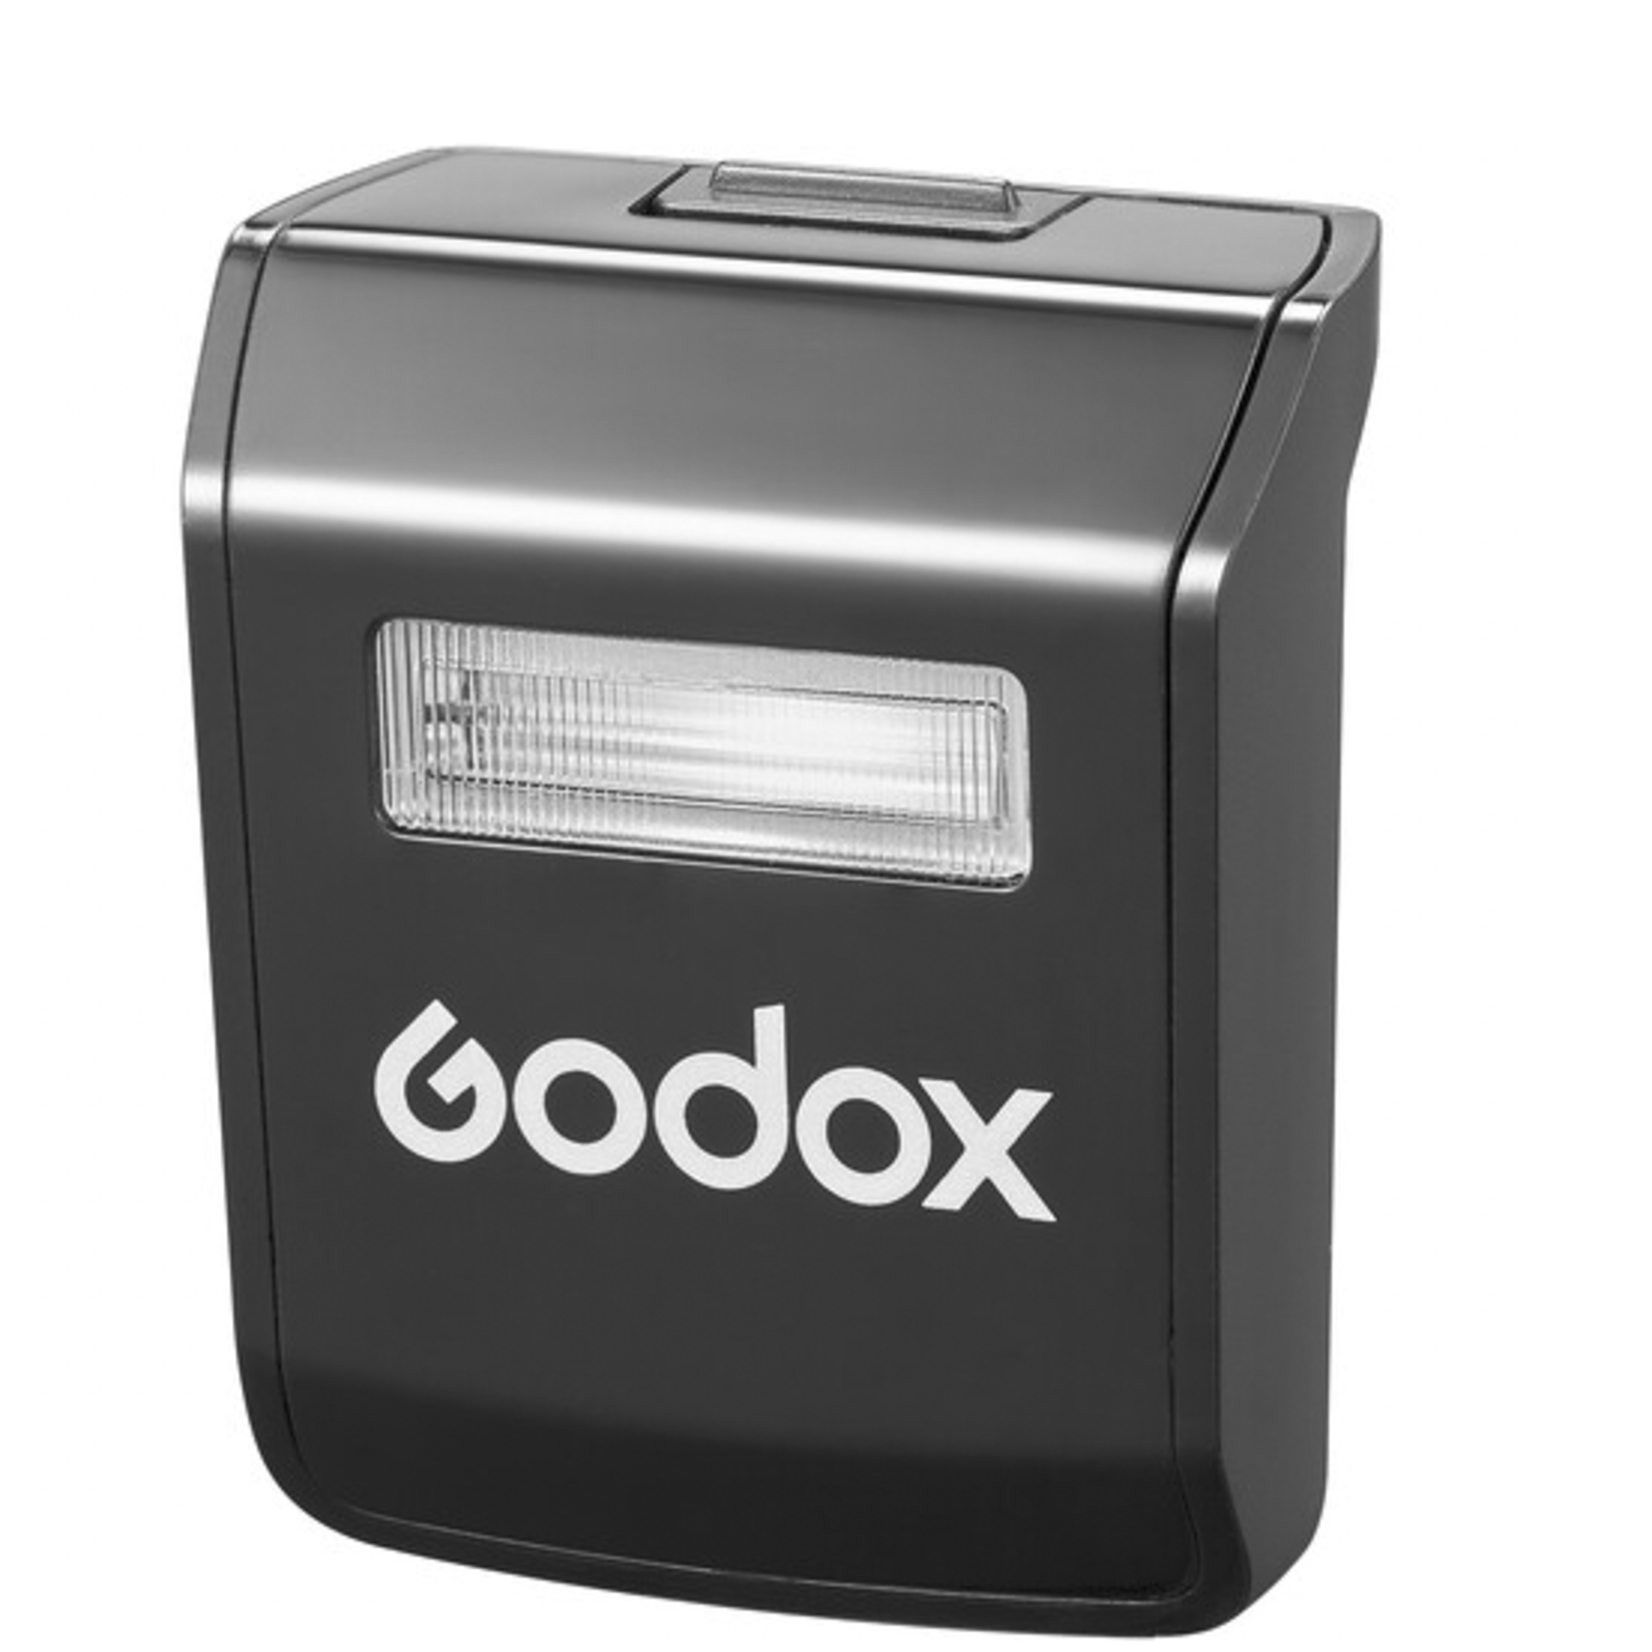 Godox Godox Sub-Flash for V1Pro